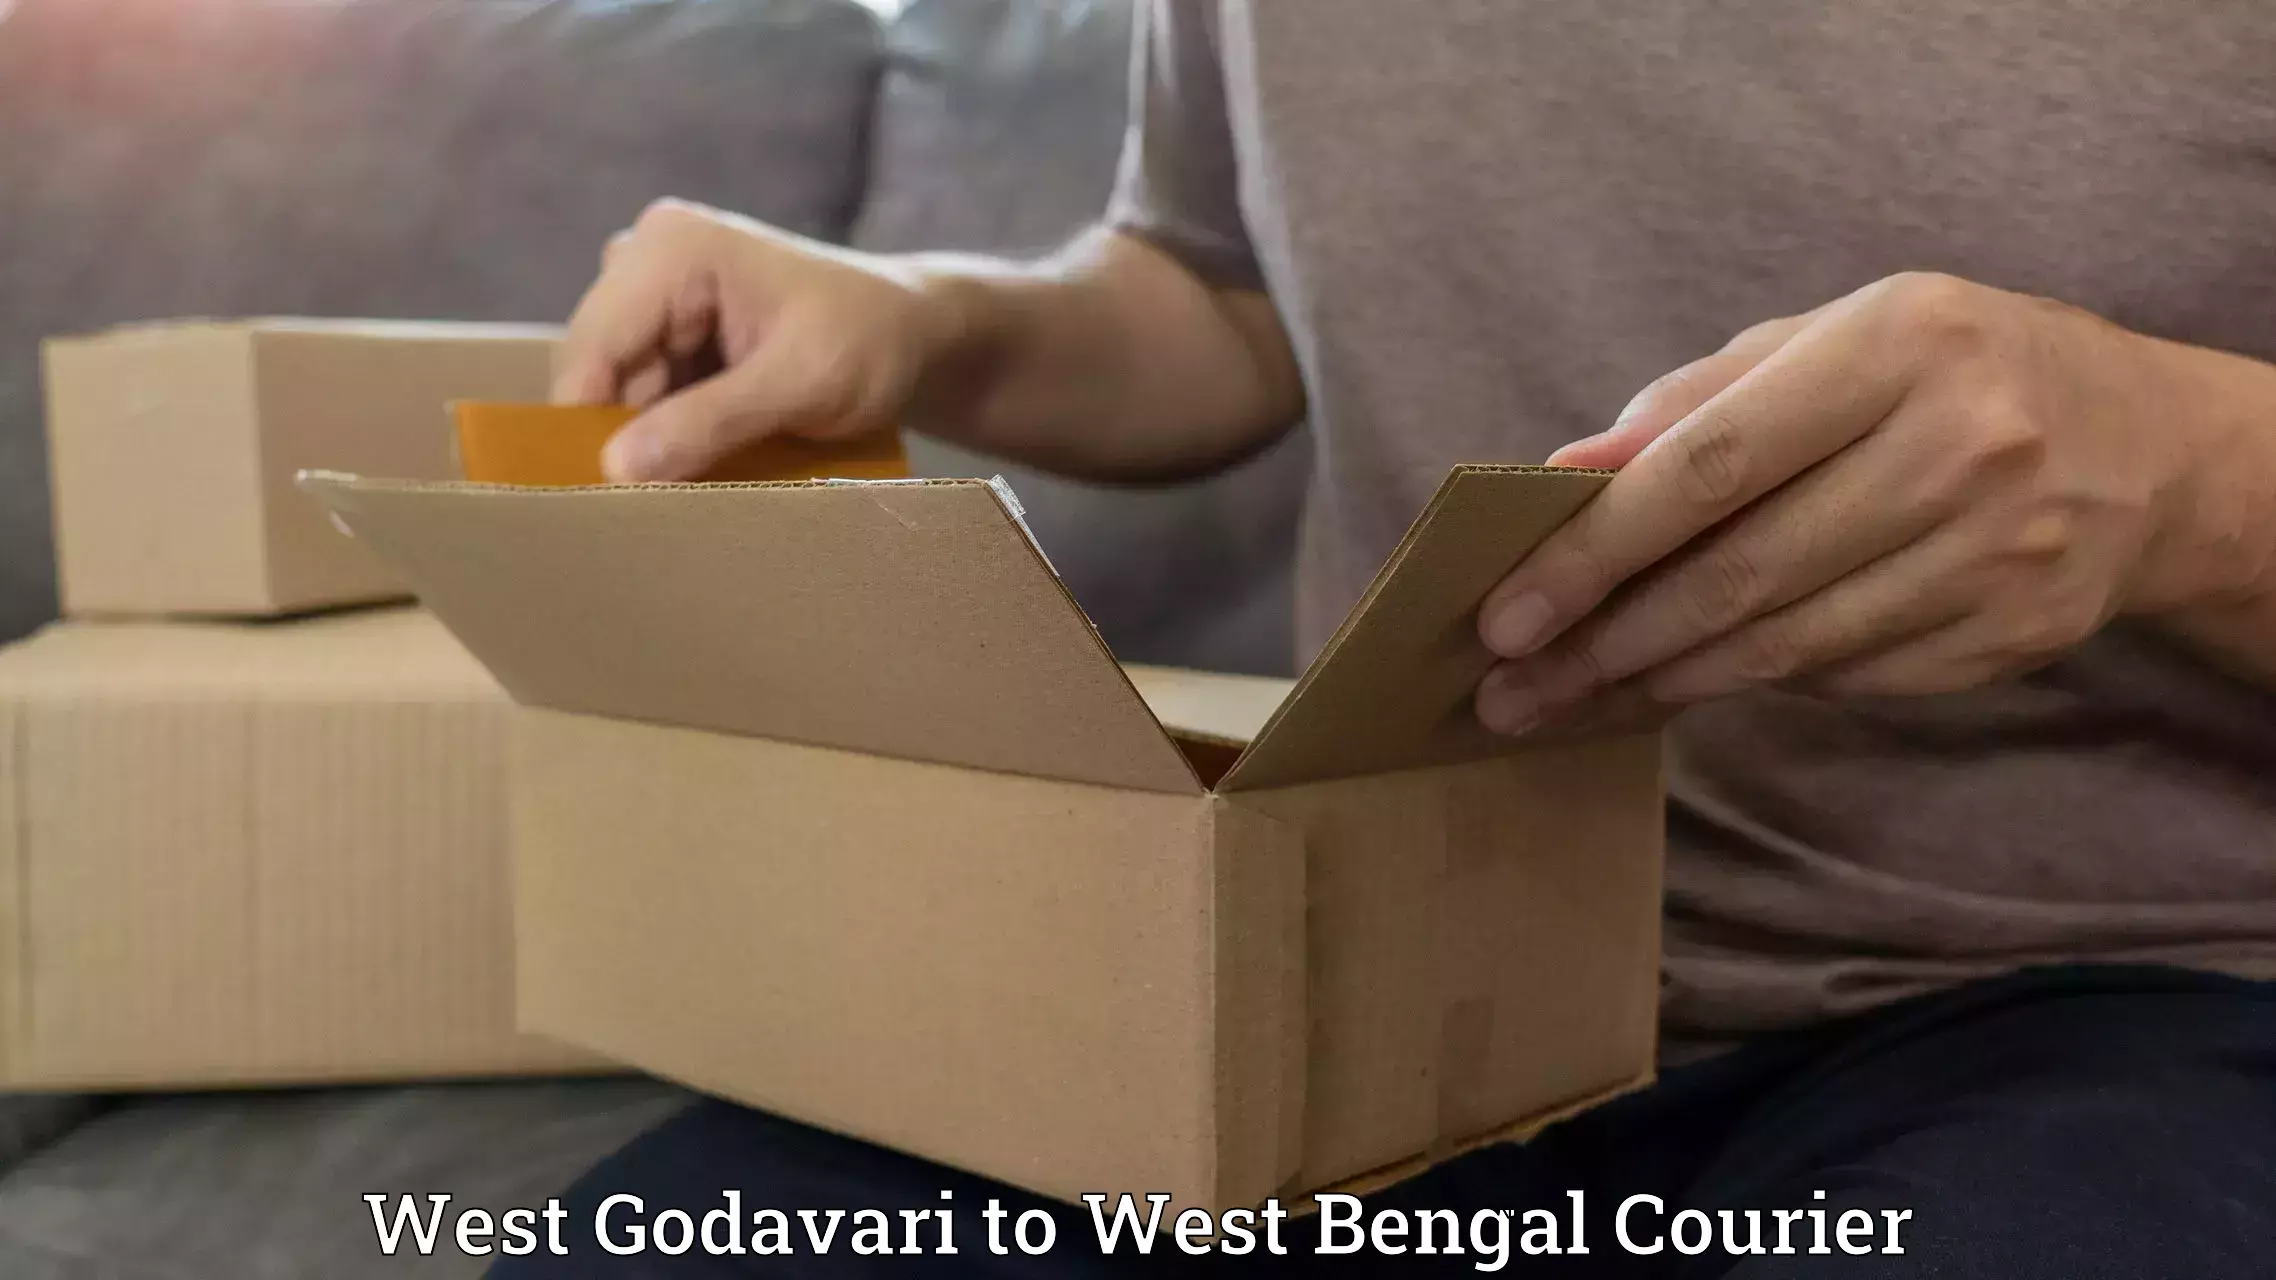 Reliable delivery network West Godavari to Kolkata Port